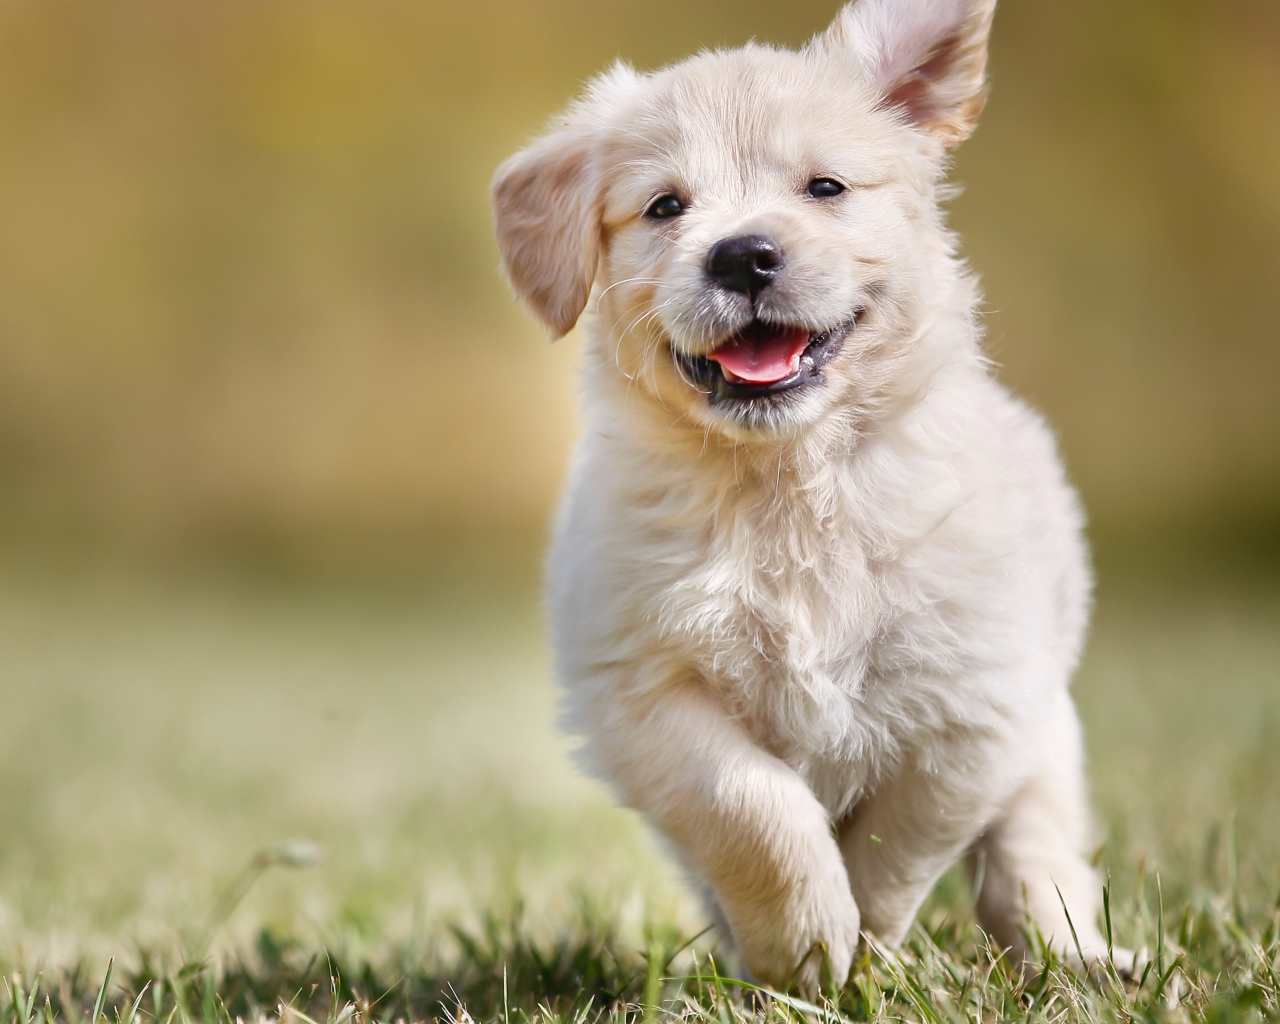 Довольный щенок золотистого ретривера бежит по зеленой траве